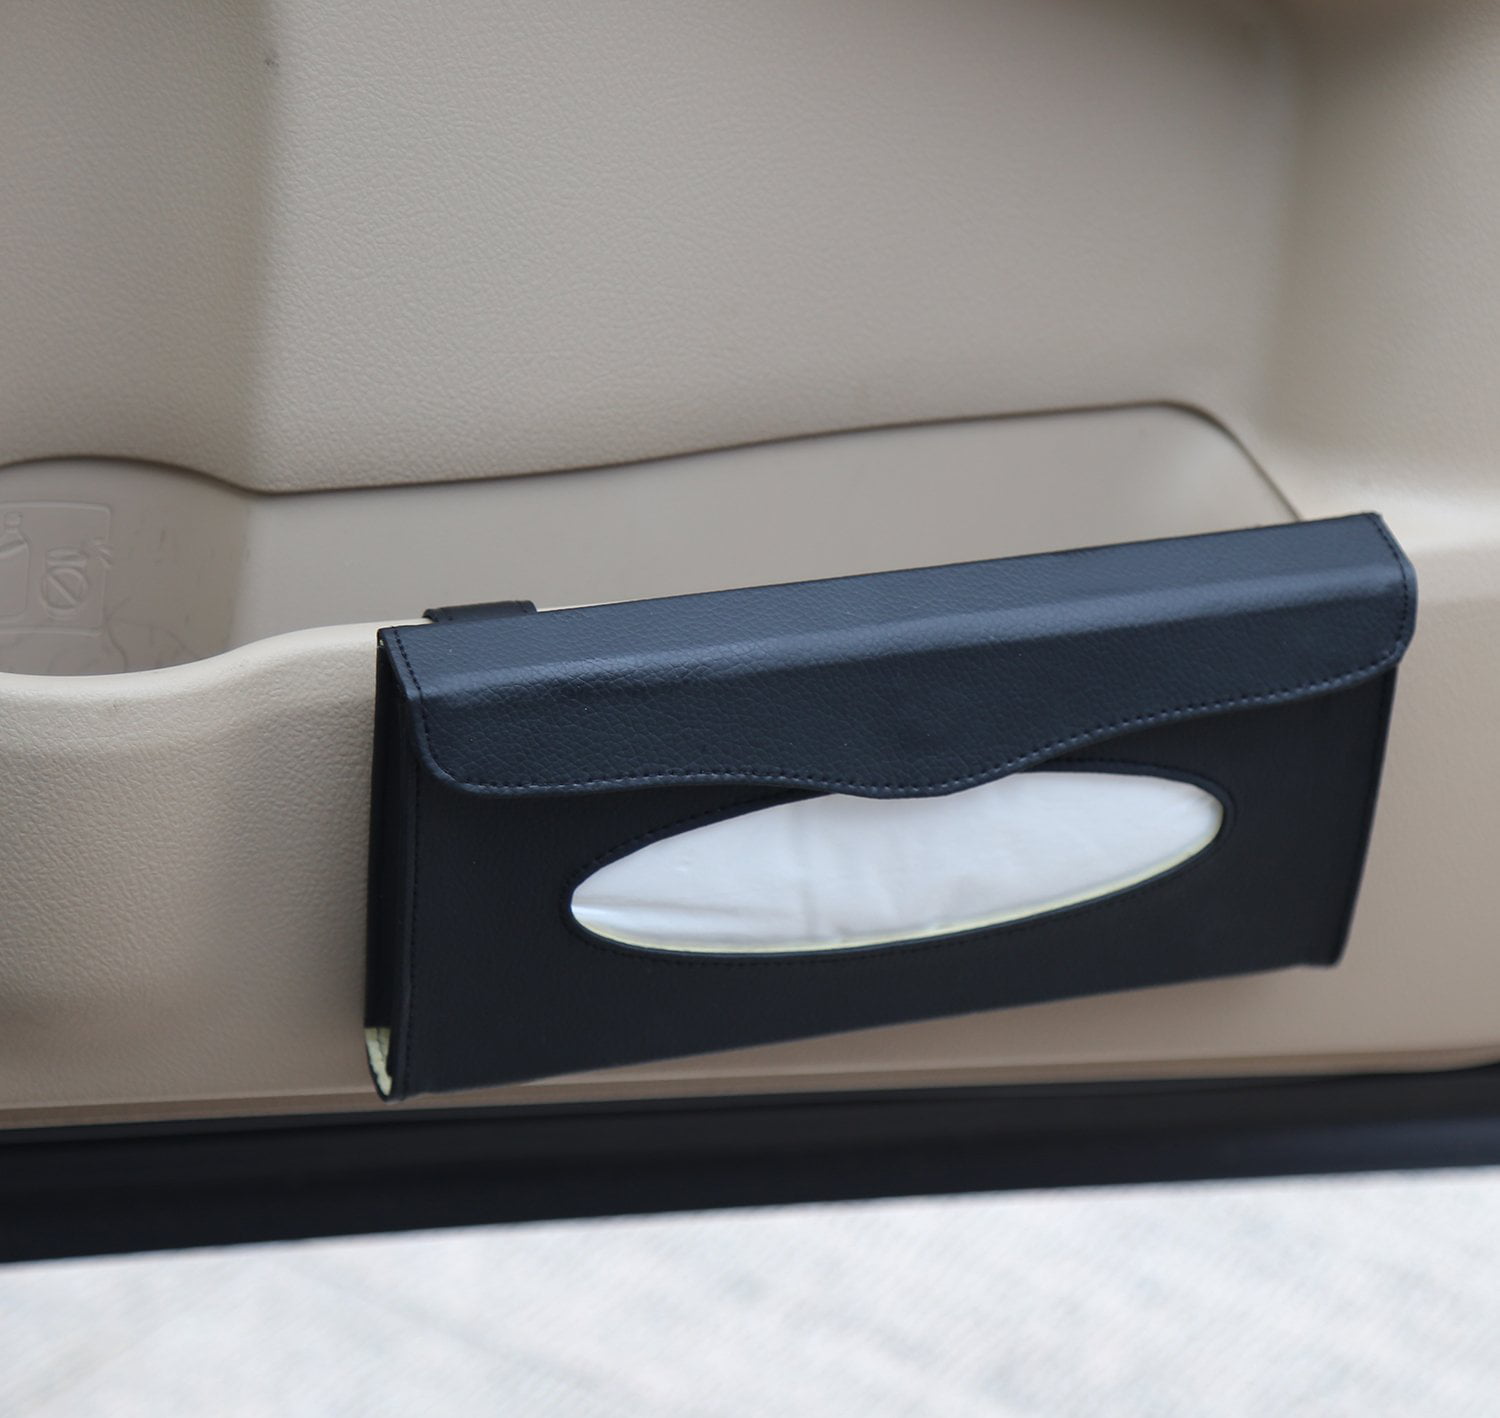 Car Tissue Holder PU Leather Zipper Backseat Tissue case Holder for Car/Vehicle Gray Sun Visor Napkin Holder Car Visor Tissue Holder